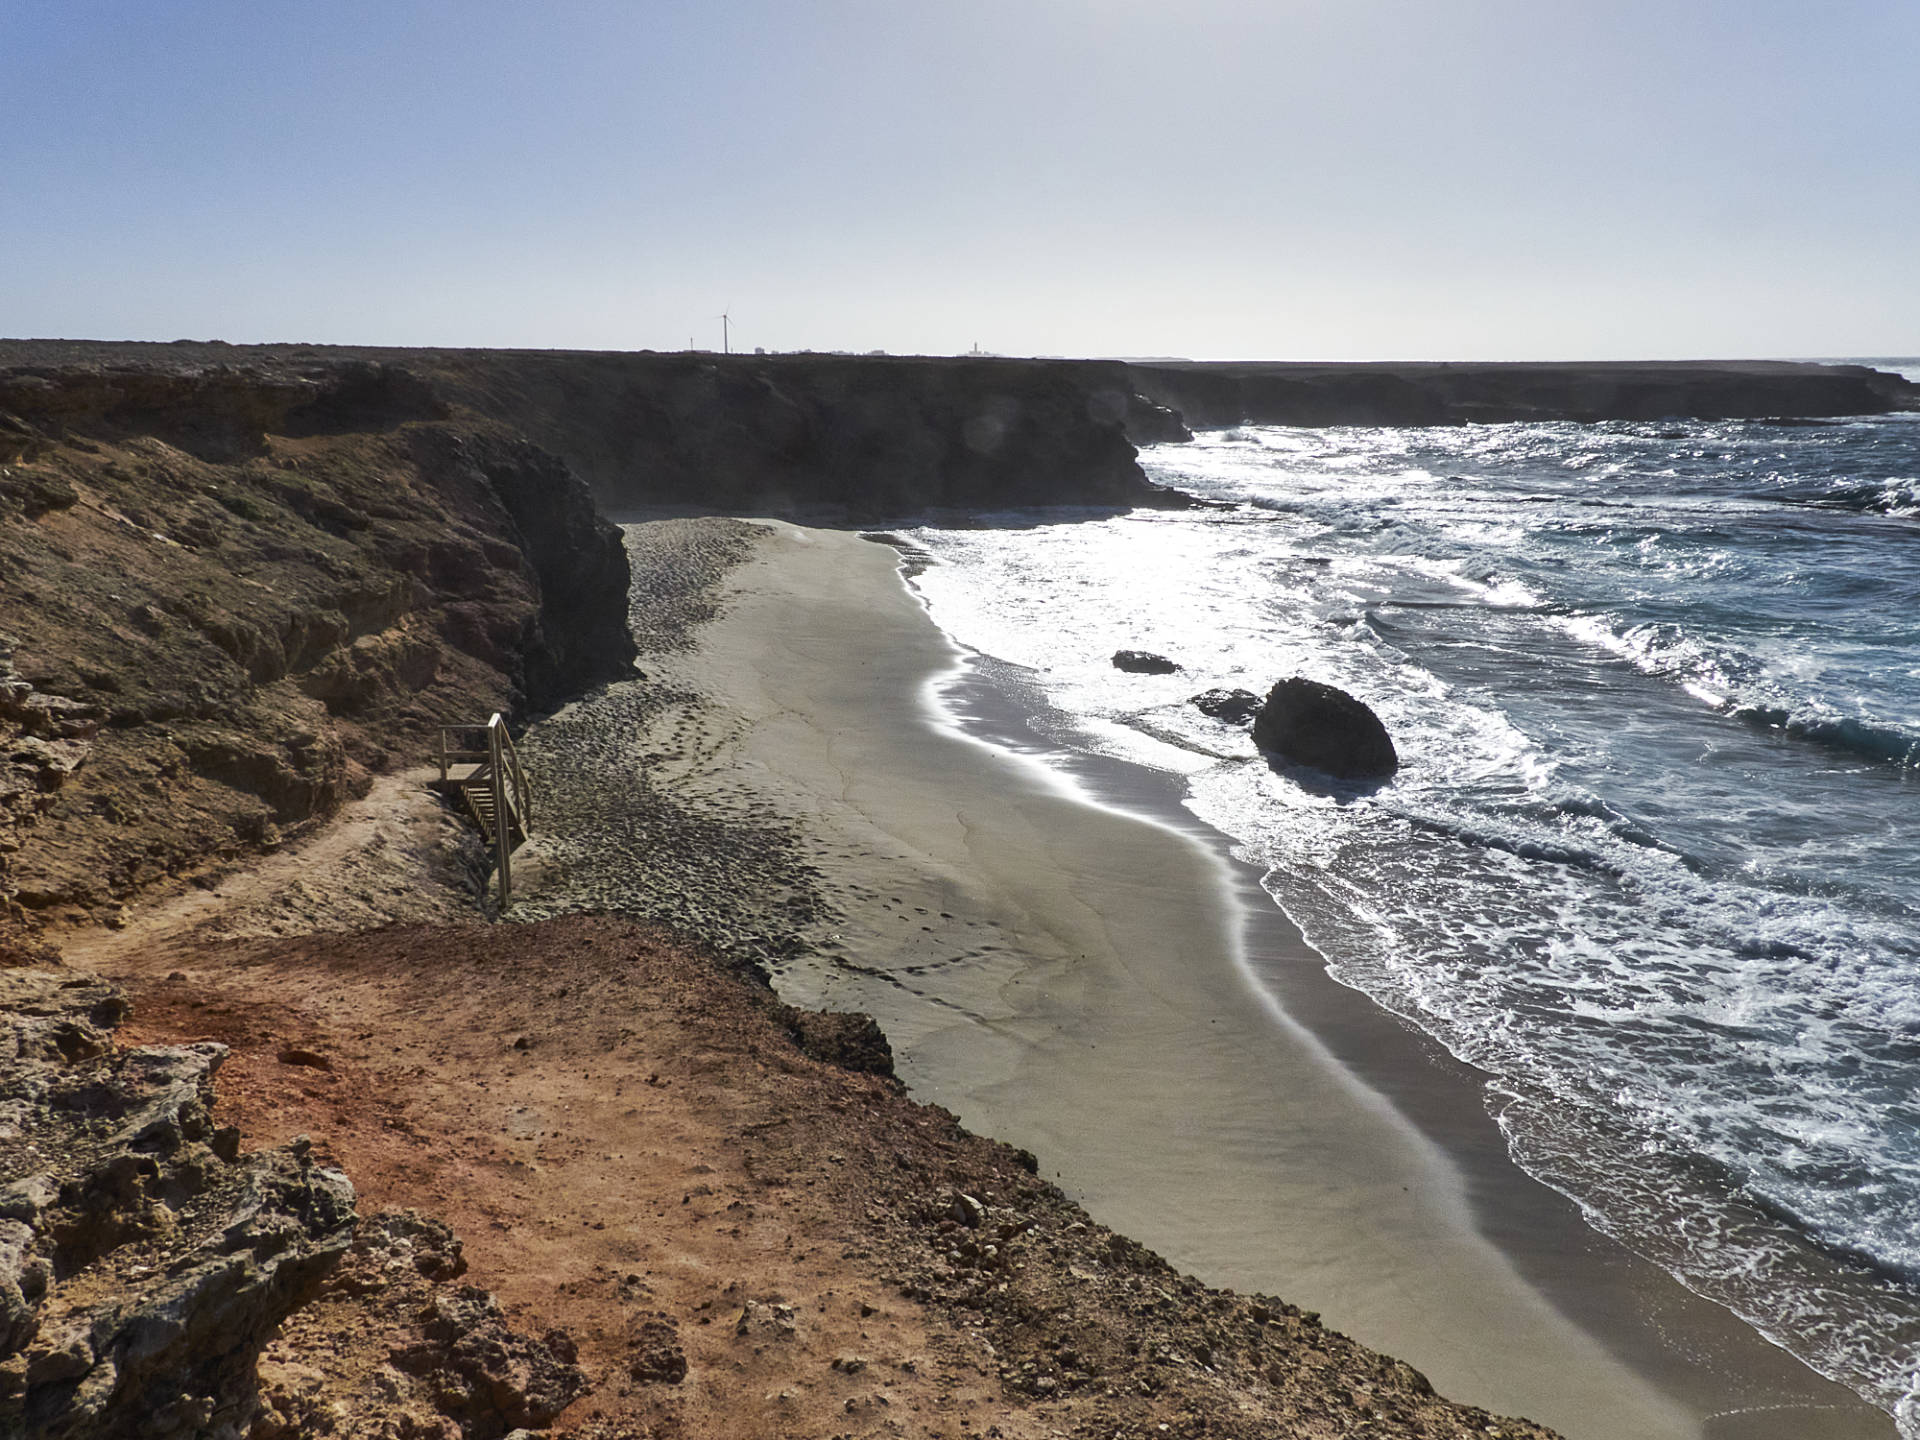 Playa de los Ojos Jandía Fuerteventura.